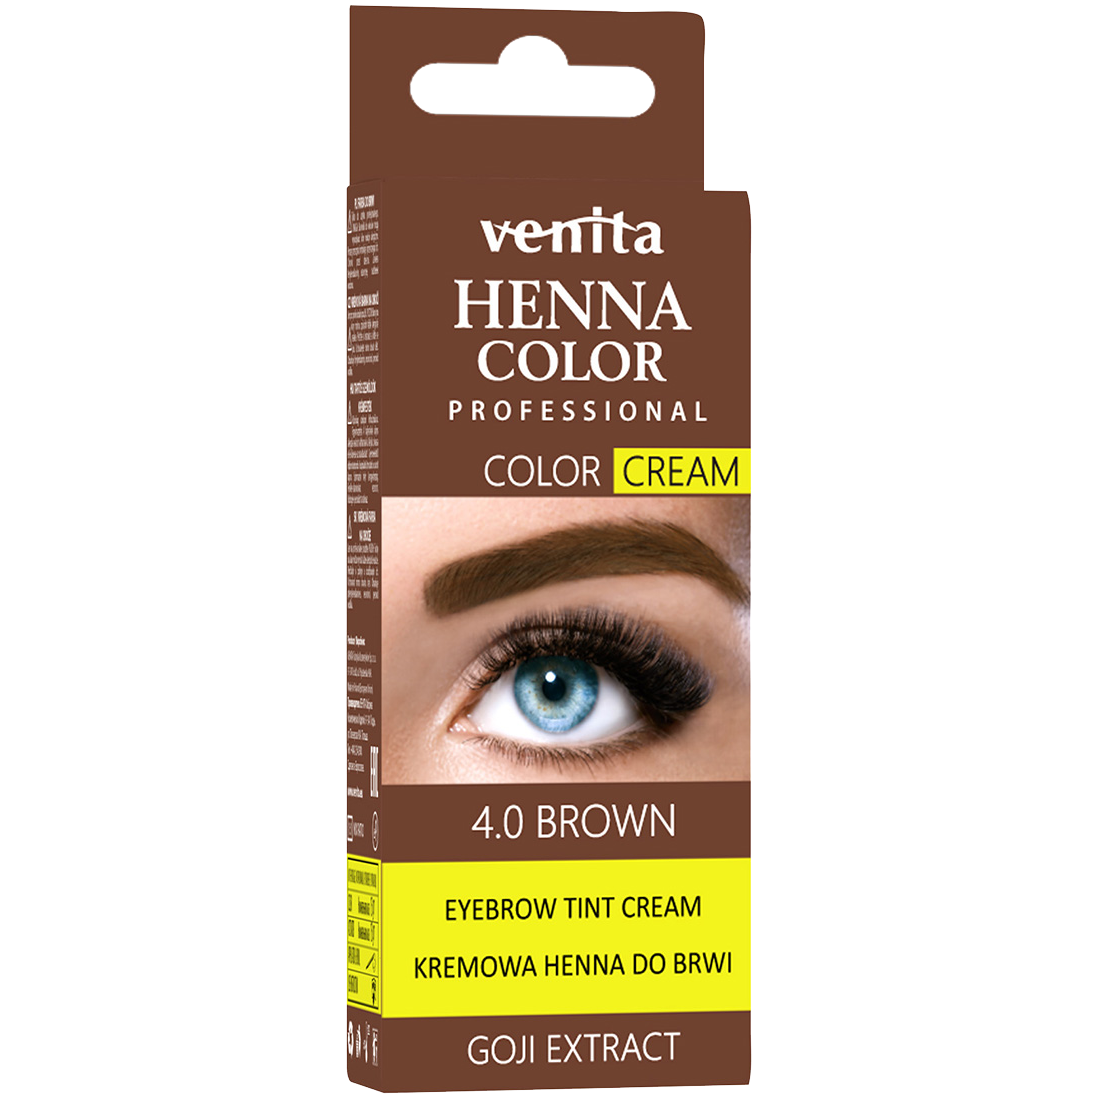 Venita Henna Color Professional Color Cream